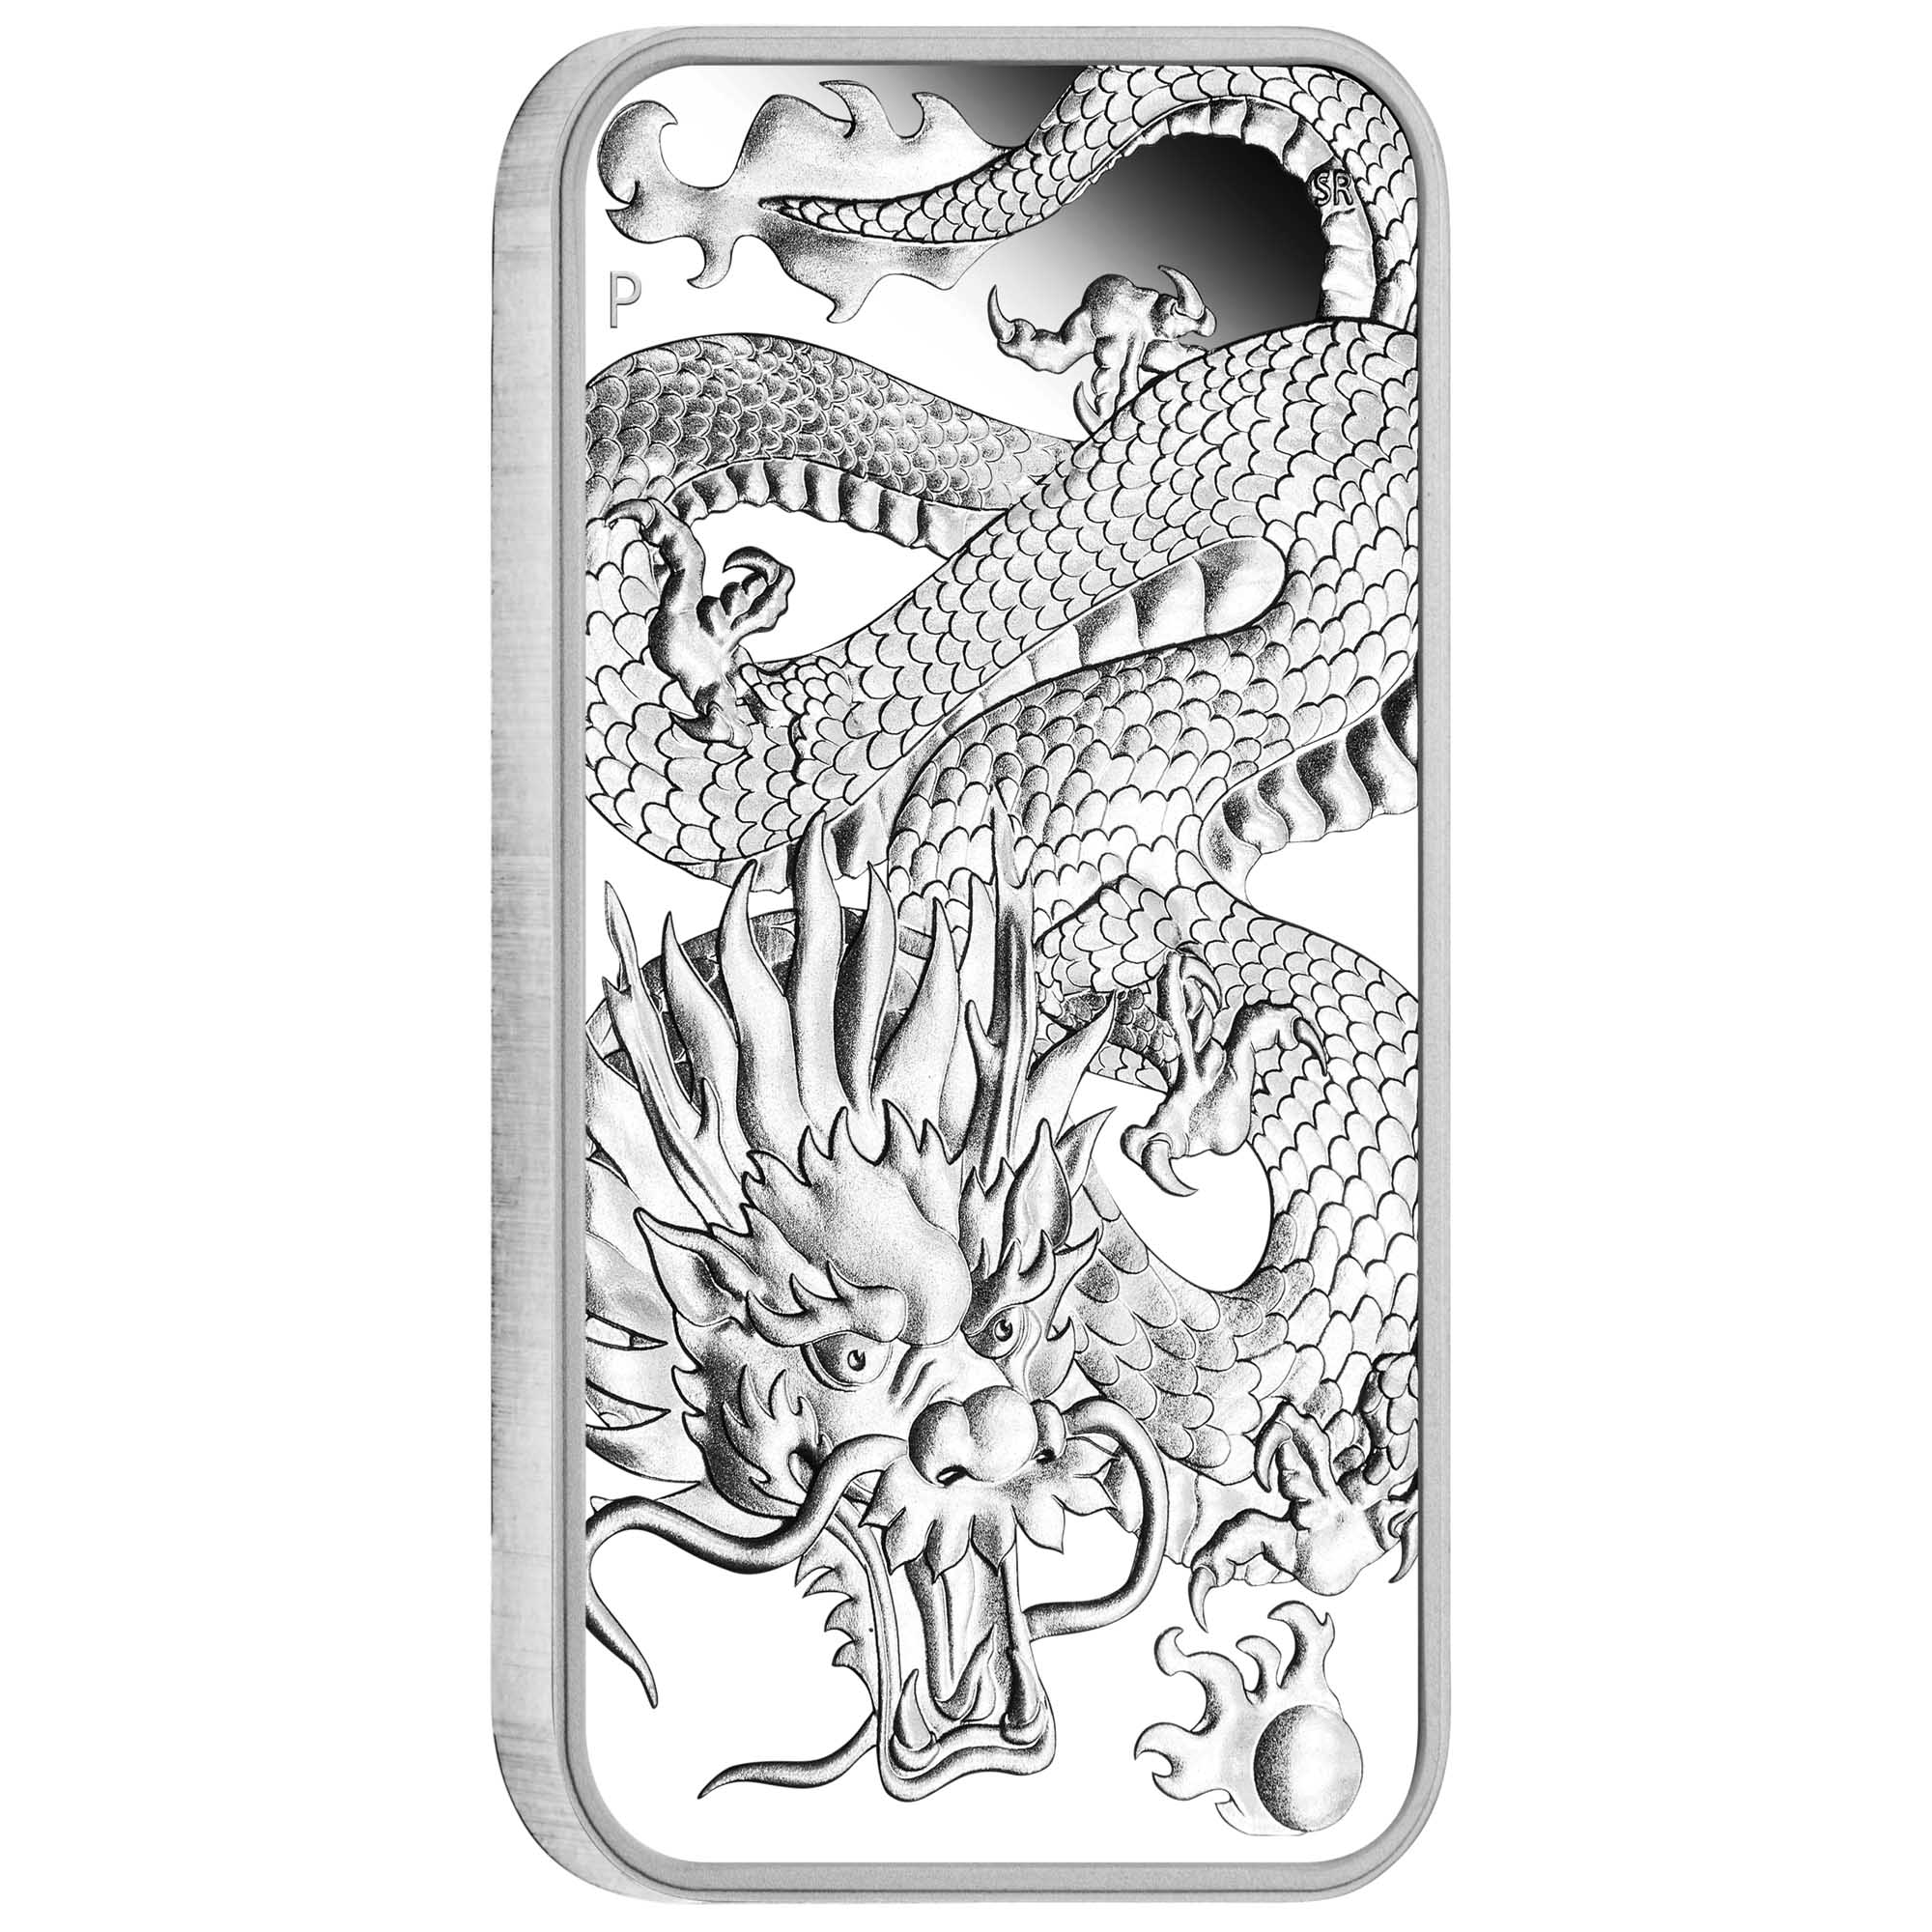 Dragon 2022 1oz Silver Proof Rectangular Coin